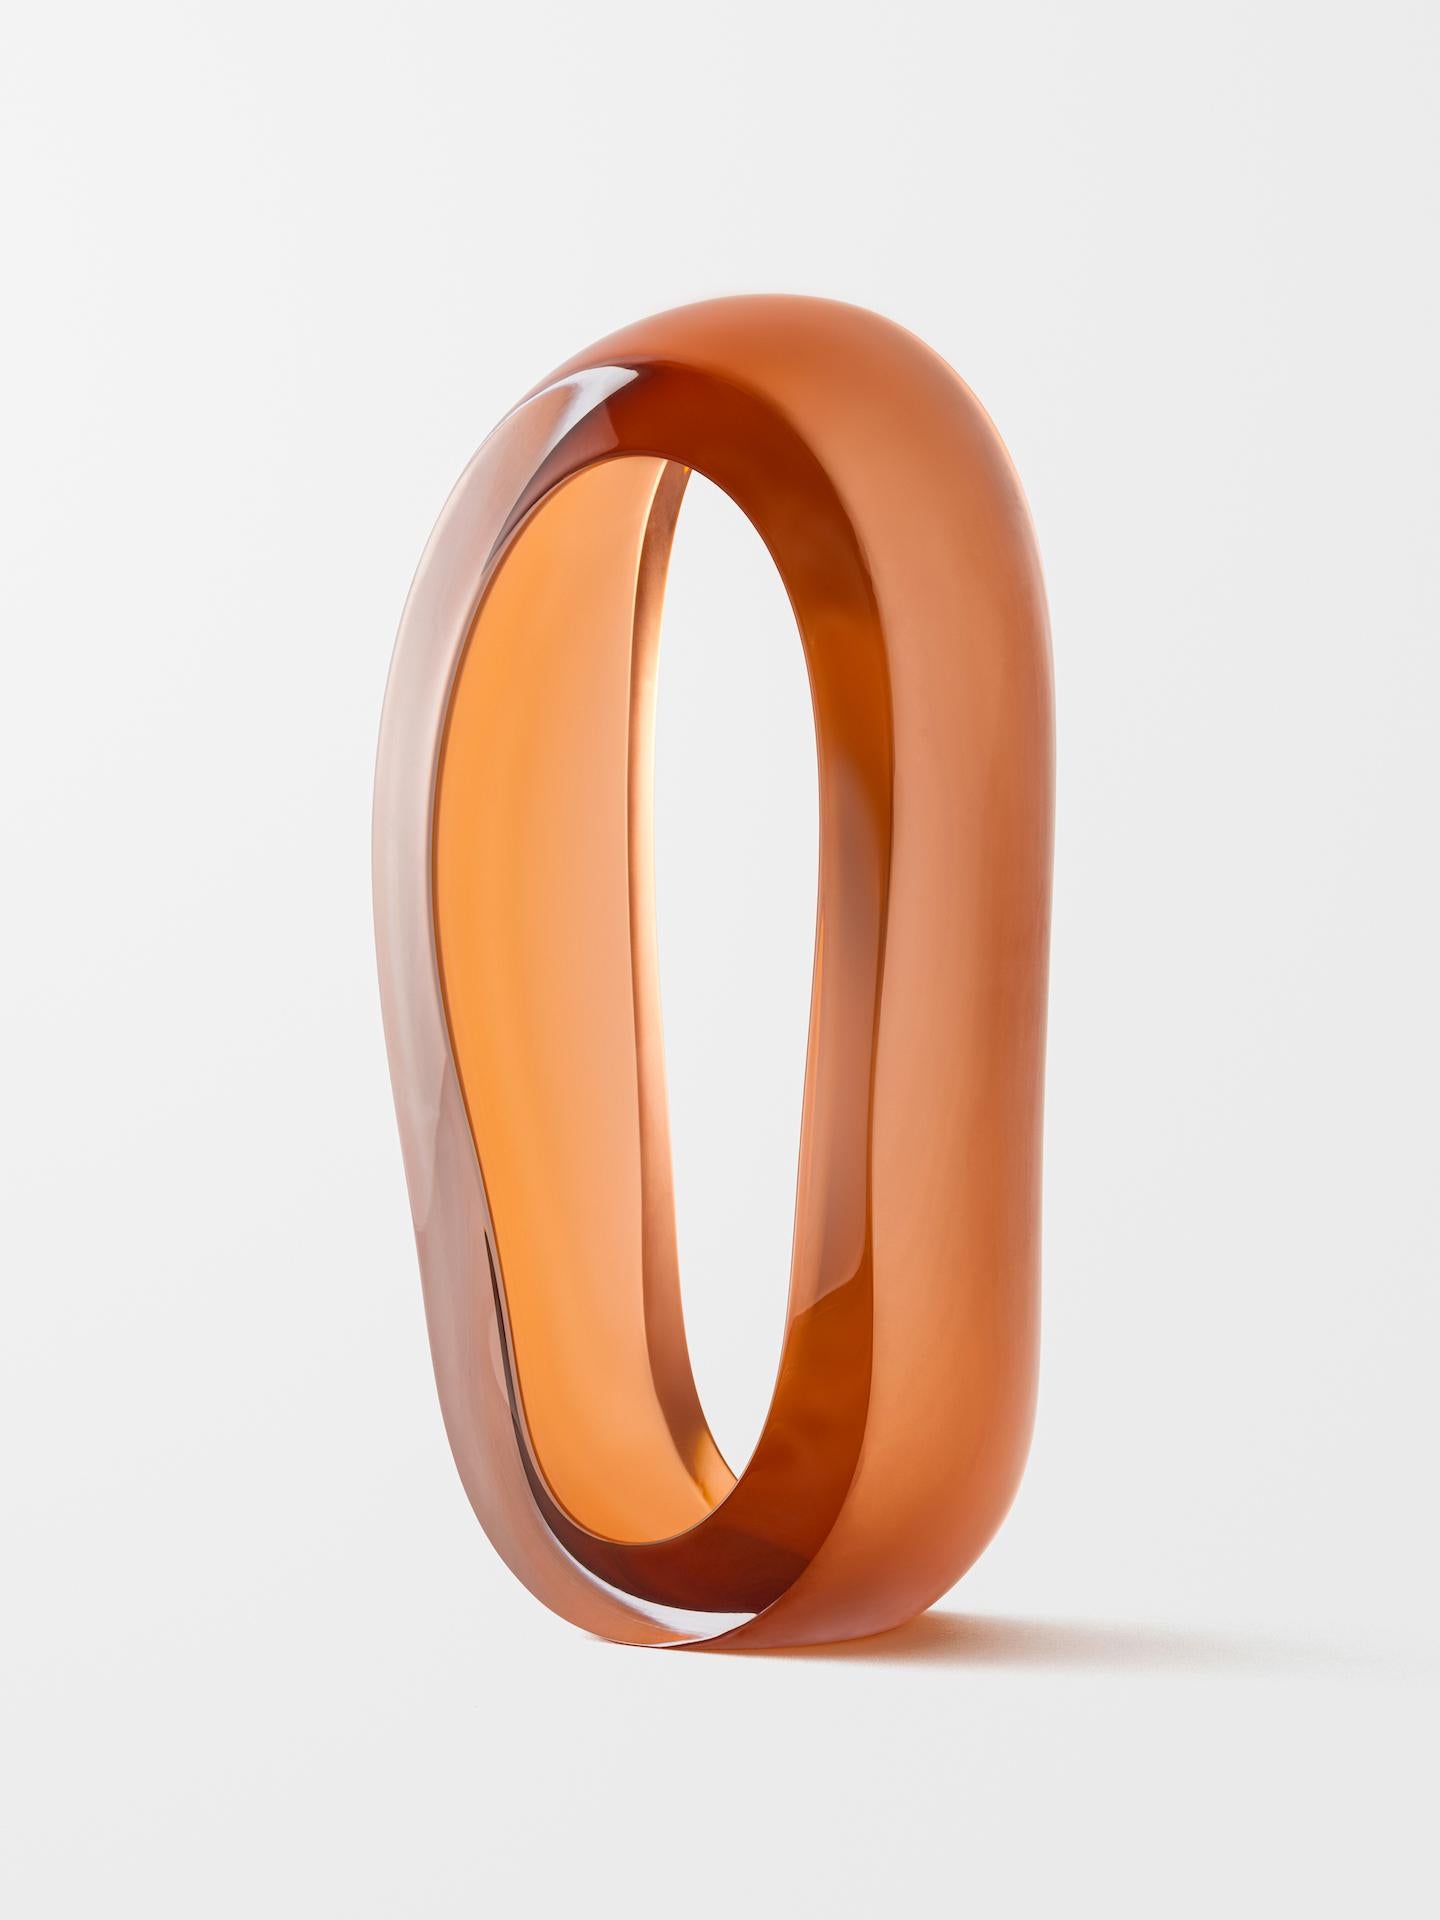 Loops (Orange) - Contemporary Sculpture by Jonas Noël Niedermann